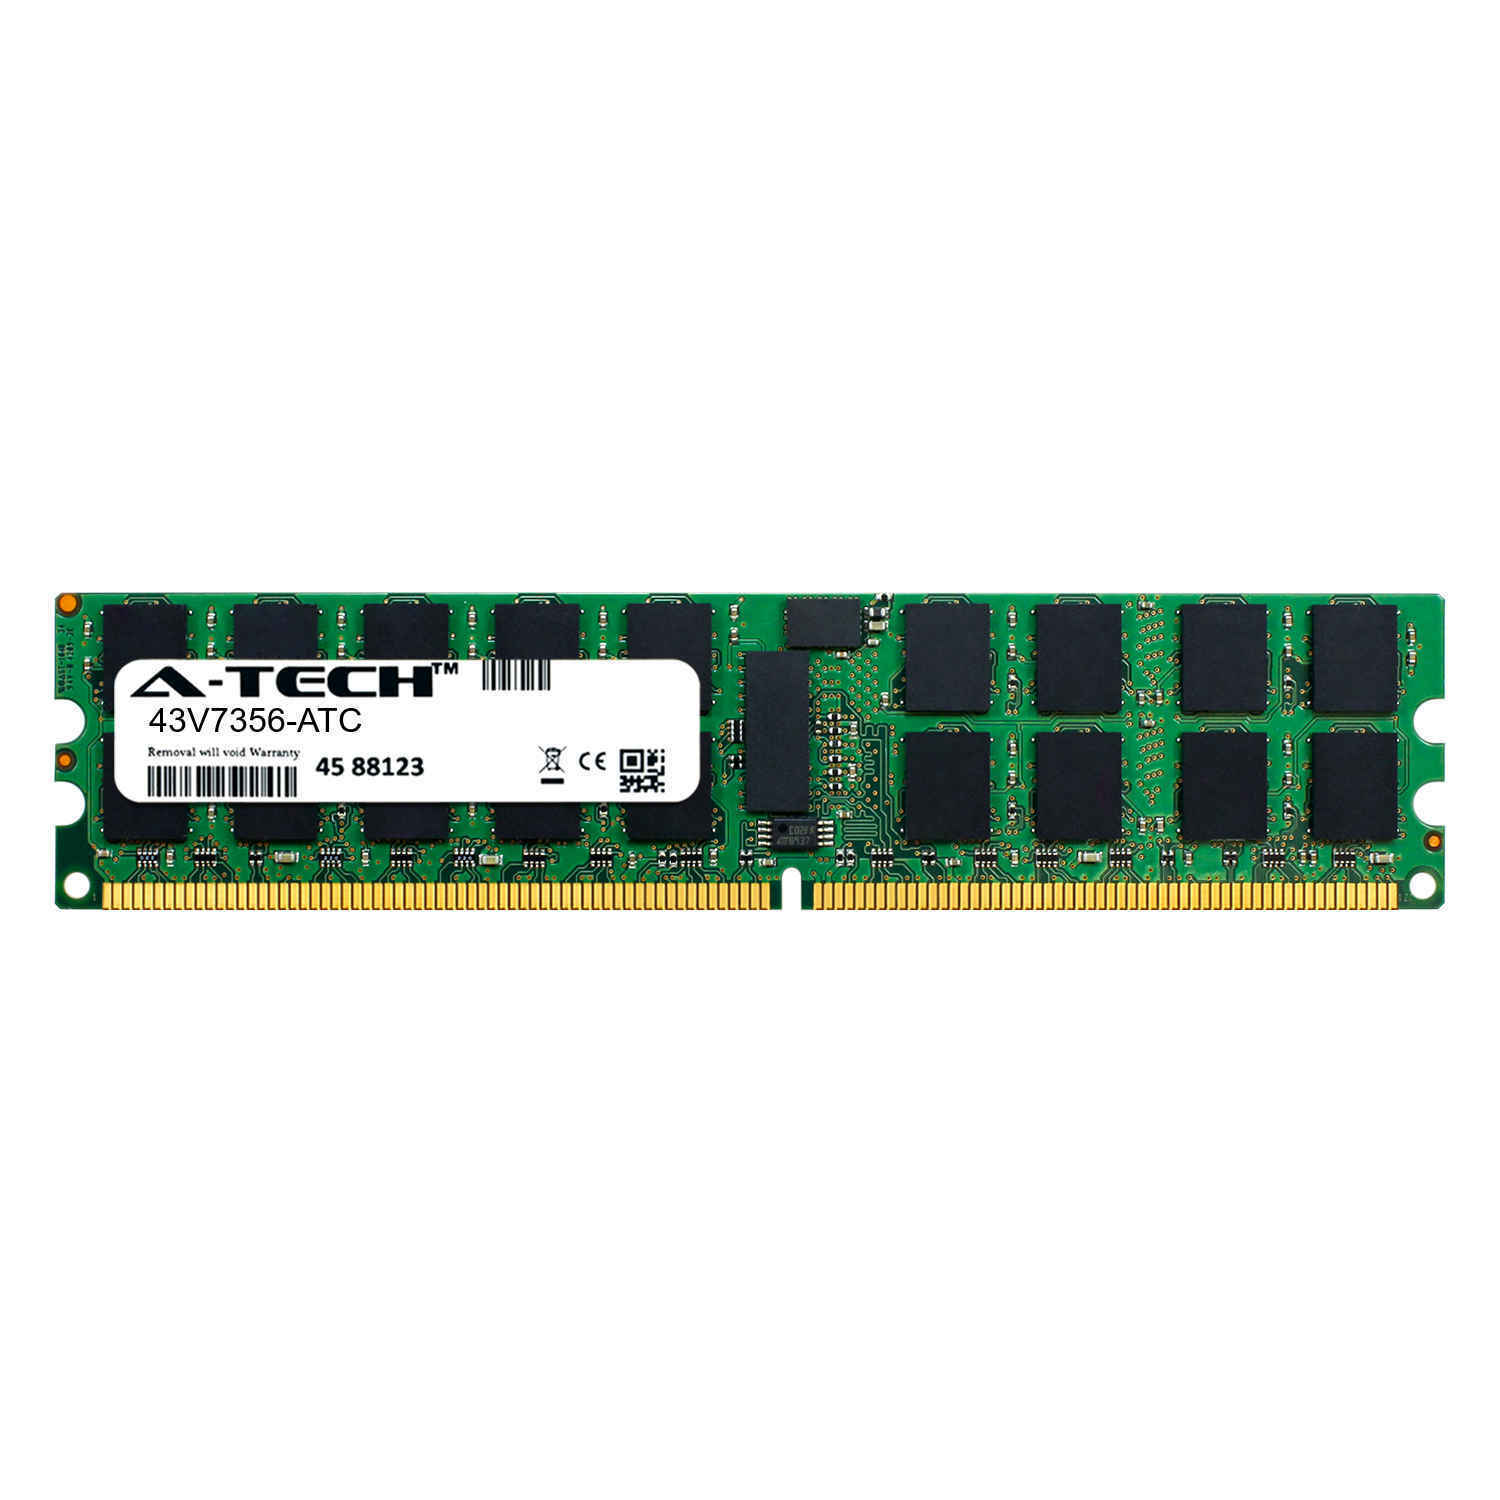 8GB DDR2 PC2-5300R 667MHz RDIMM (IBM 43V7356 Equivalent) Server Memory RAM